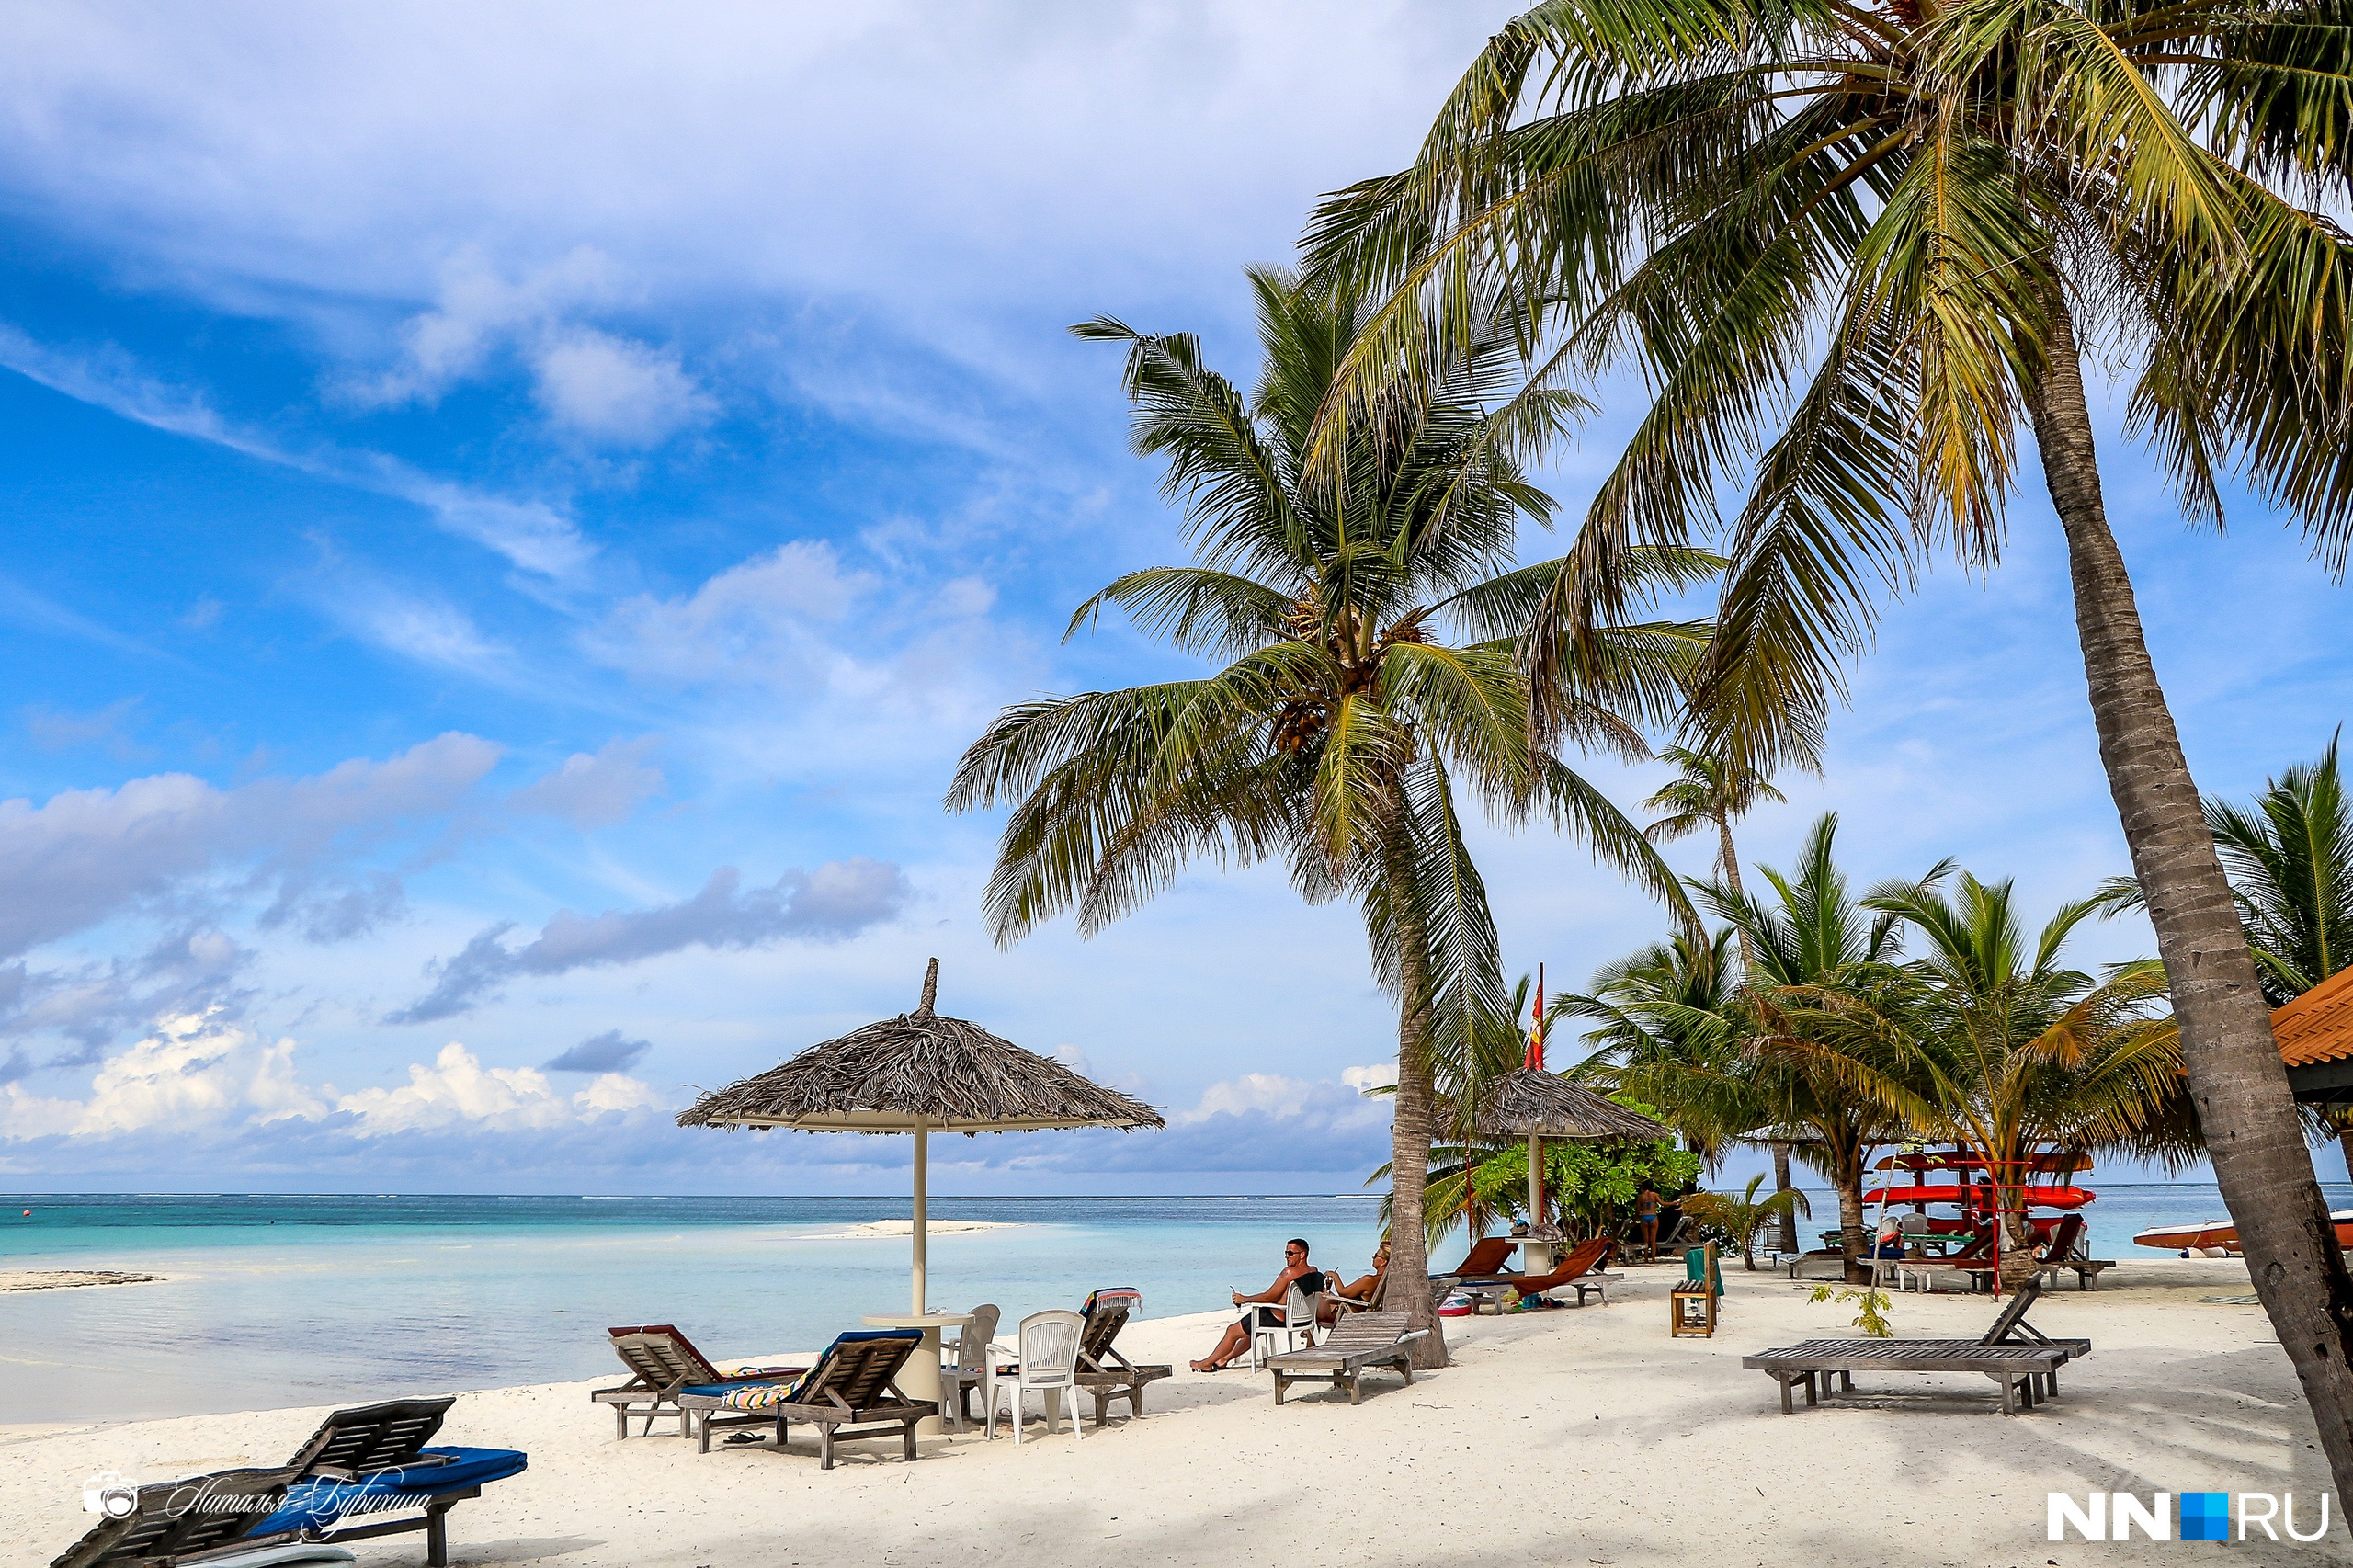 Мальдивы — мечта многих путешественников